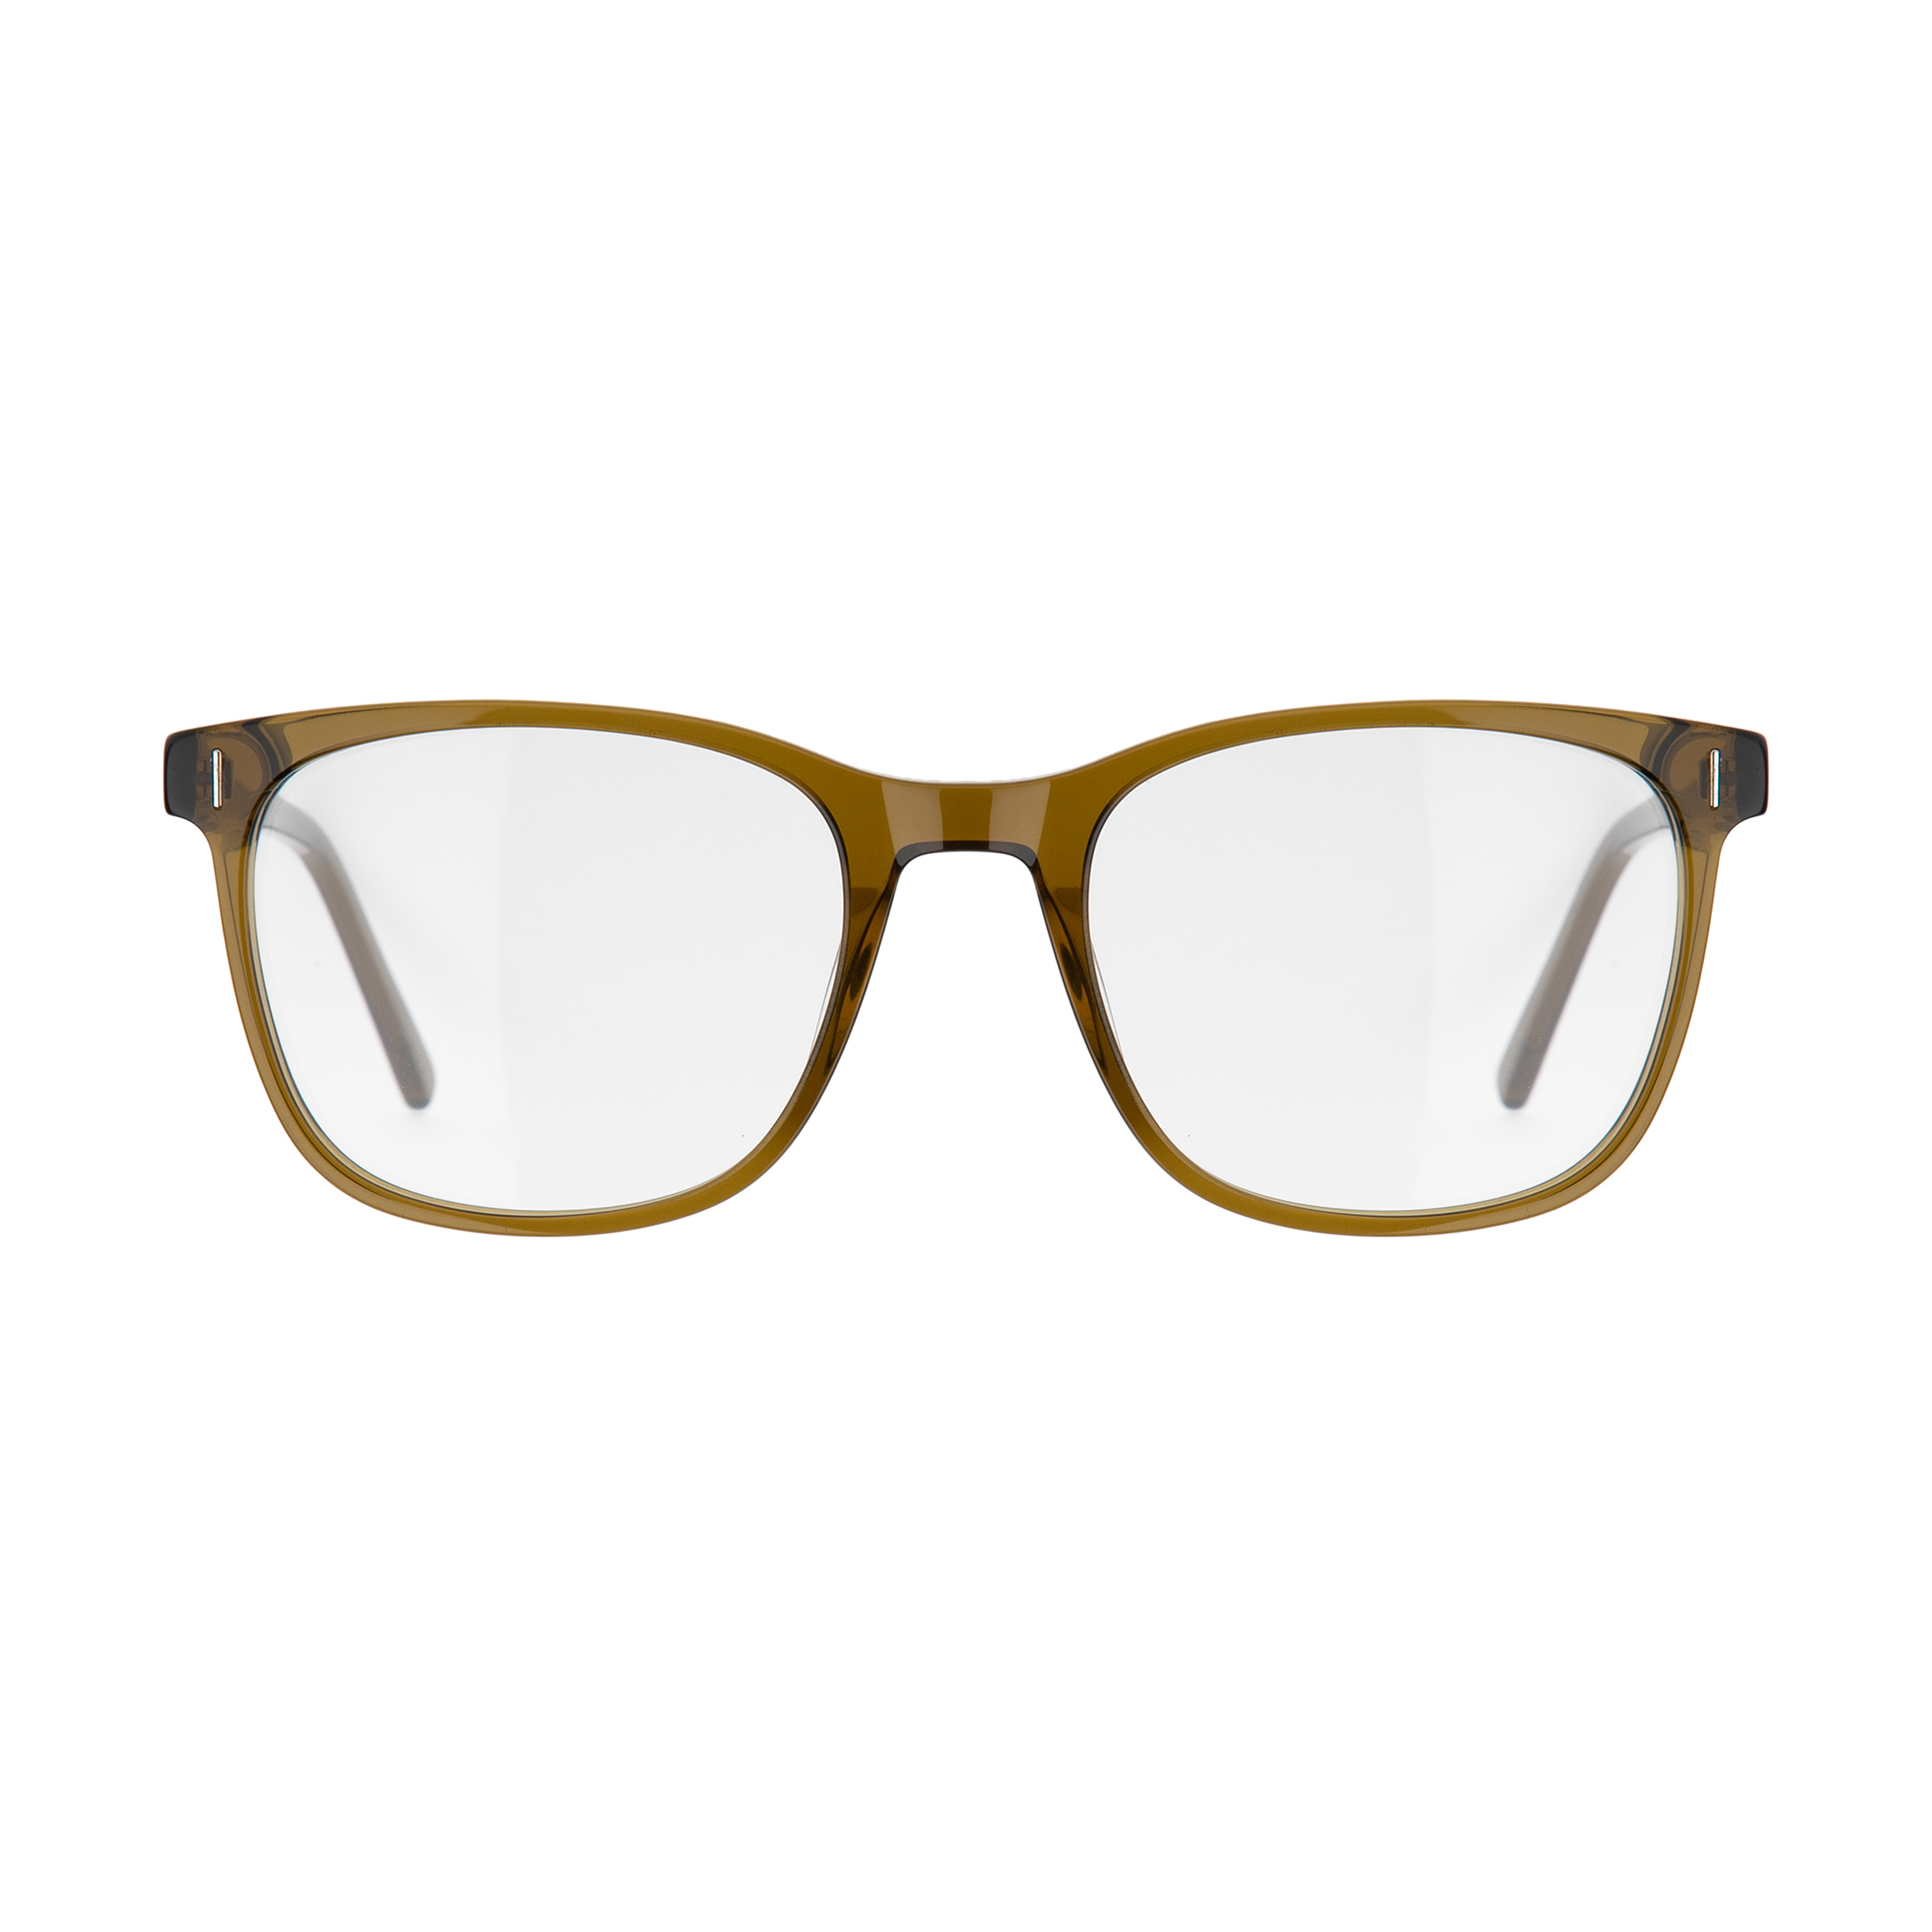 فریم عینک طبی ماسائو مدل 13192-117